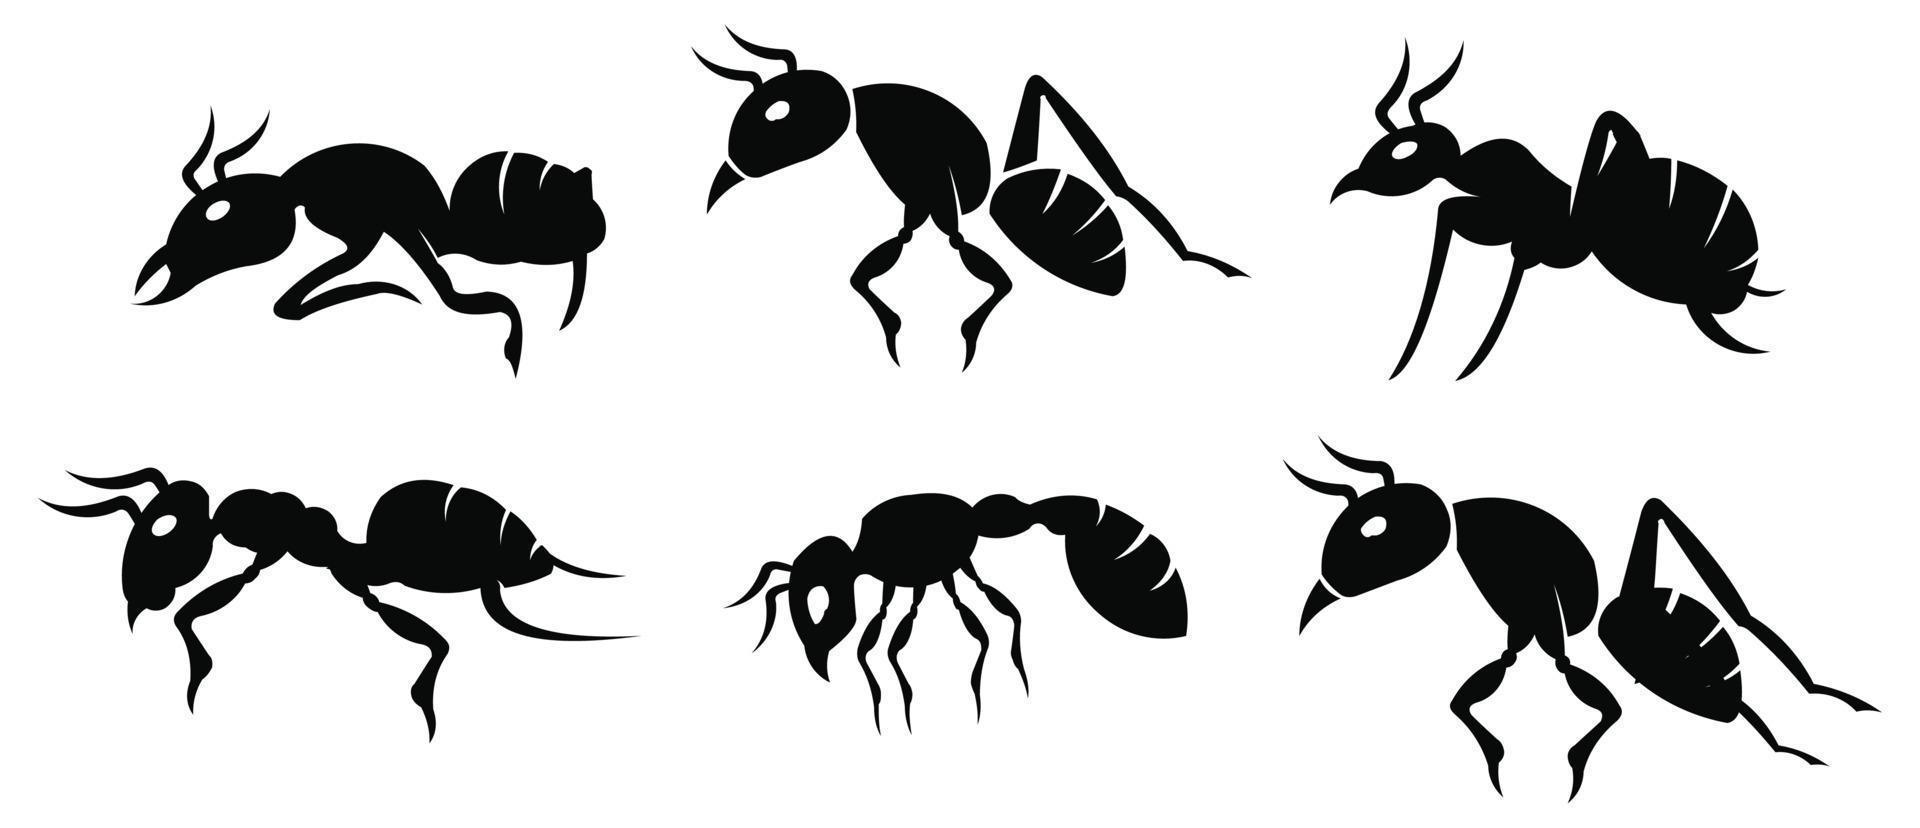 conjunto de hormigas viaje de siluetas de insectos negros, grupo de colonias de trabajo en equipo negro de hormigas vector